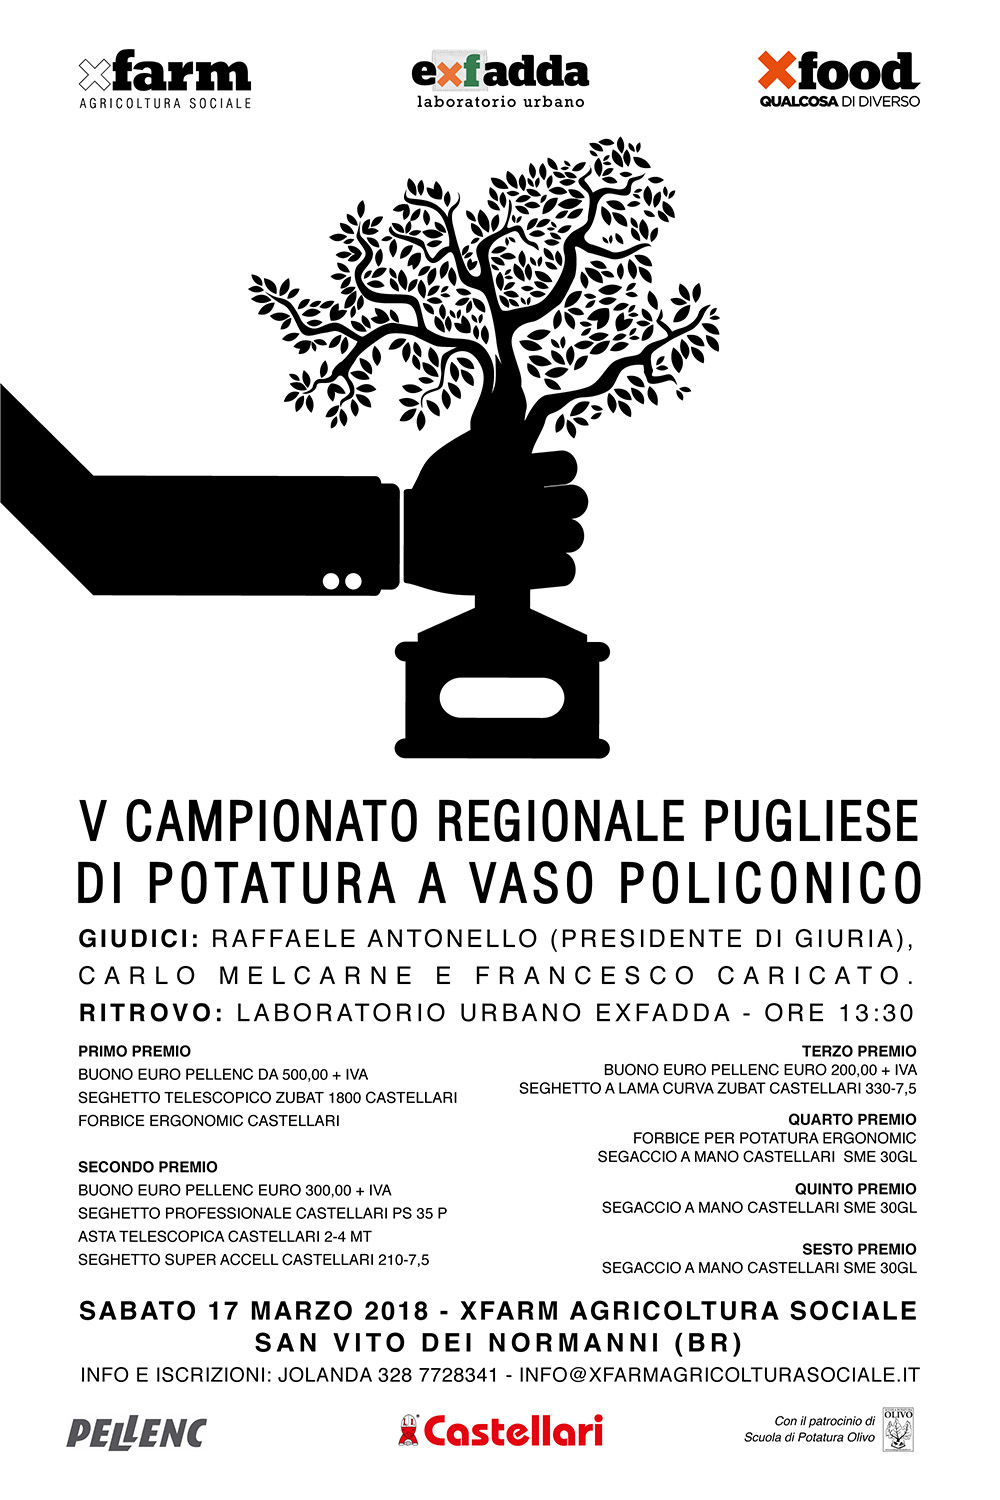 Potatura dell’olivo a vaso policonico, quinto campionato regionale in Puglia il prossimo 17 marzo